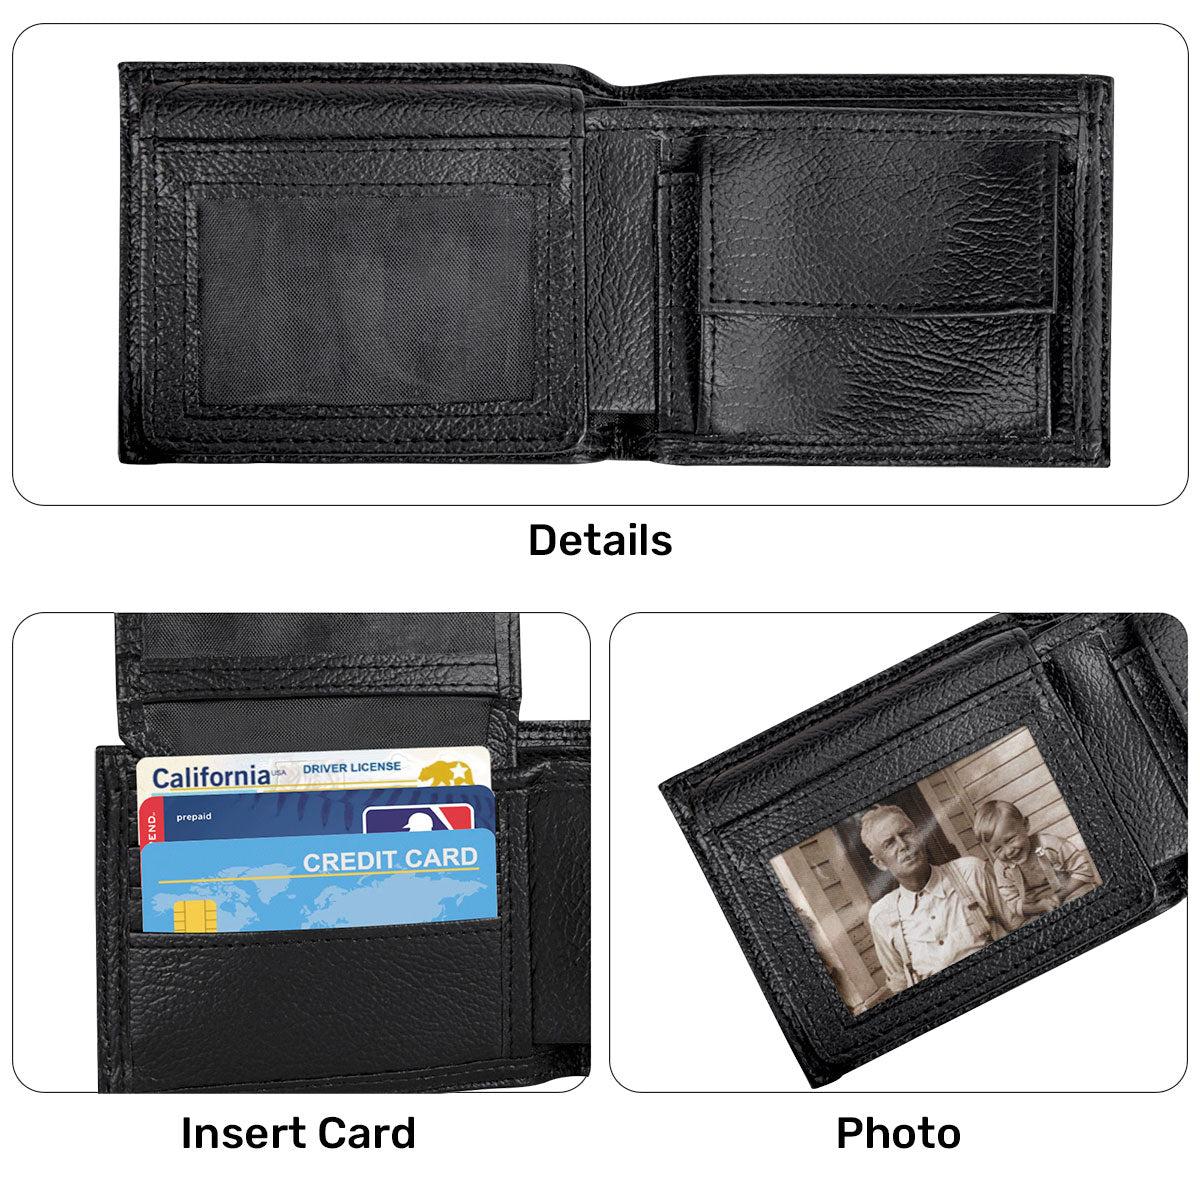 Not Ashamed Of The Gospel | Personalized Folded Wallet For Men JSLFWM1031